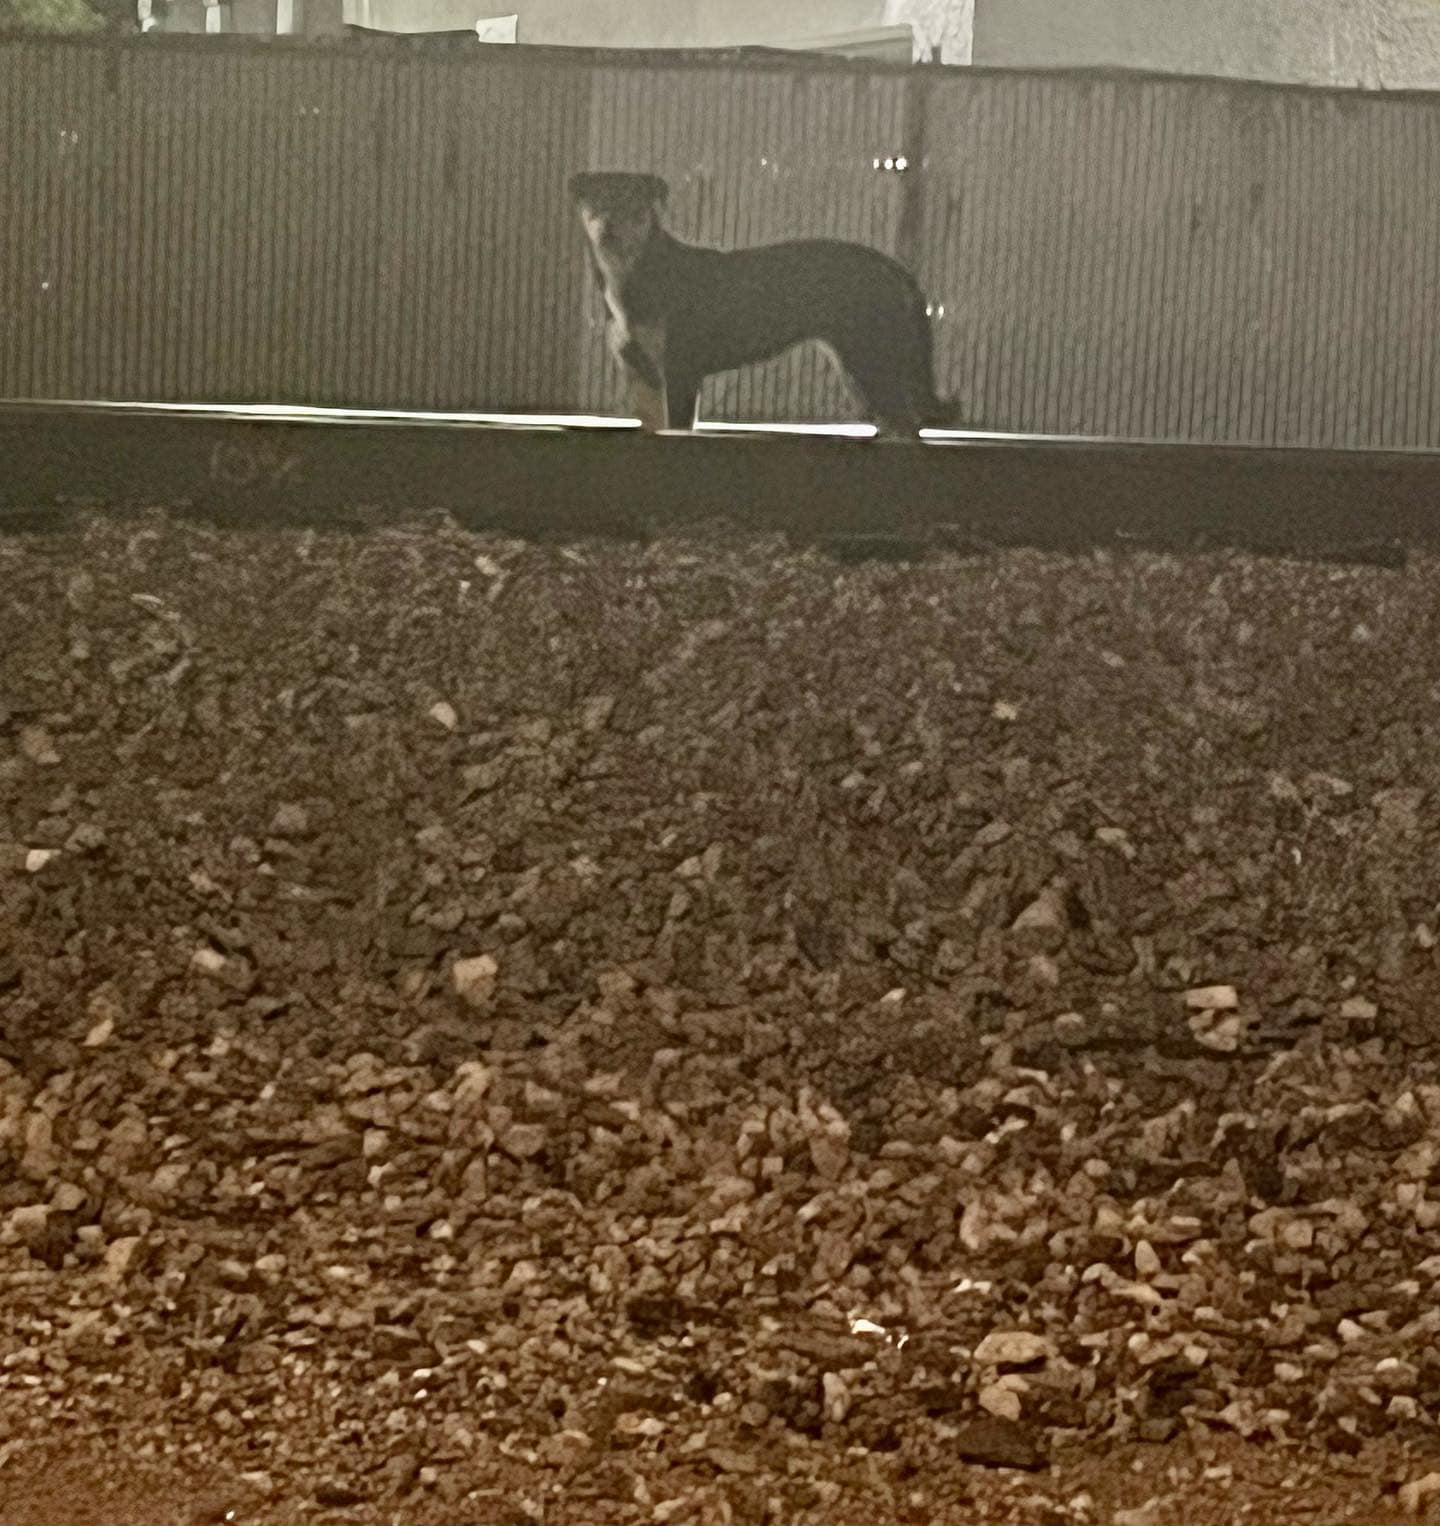 photo of a dog on train tracks